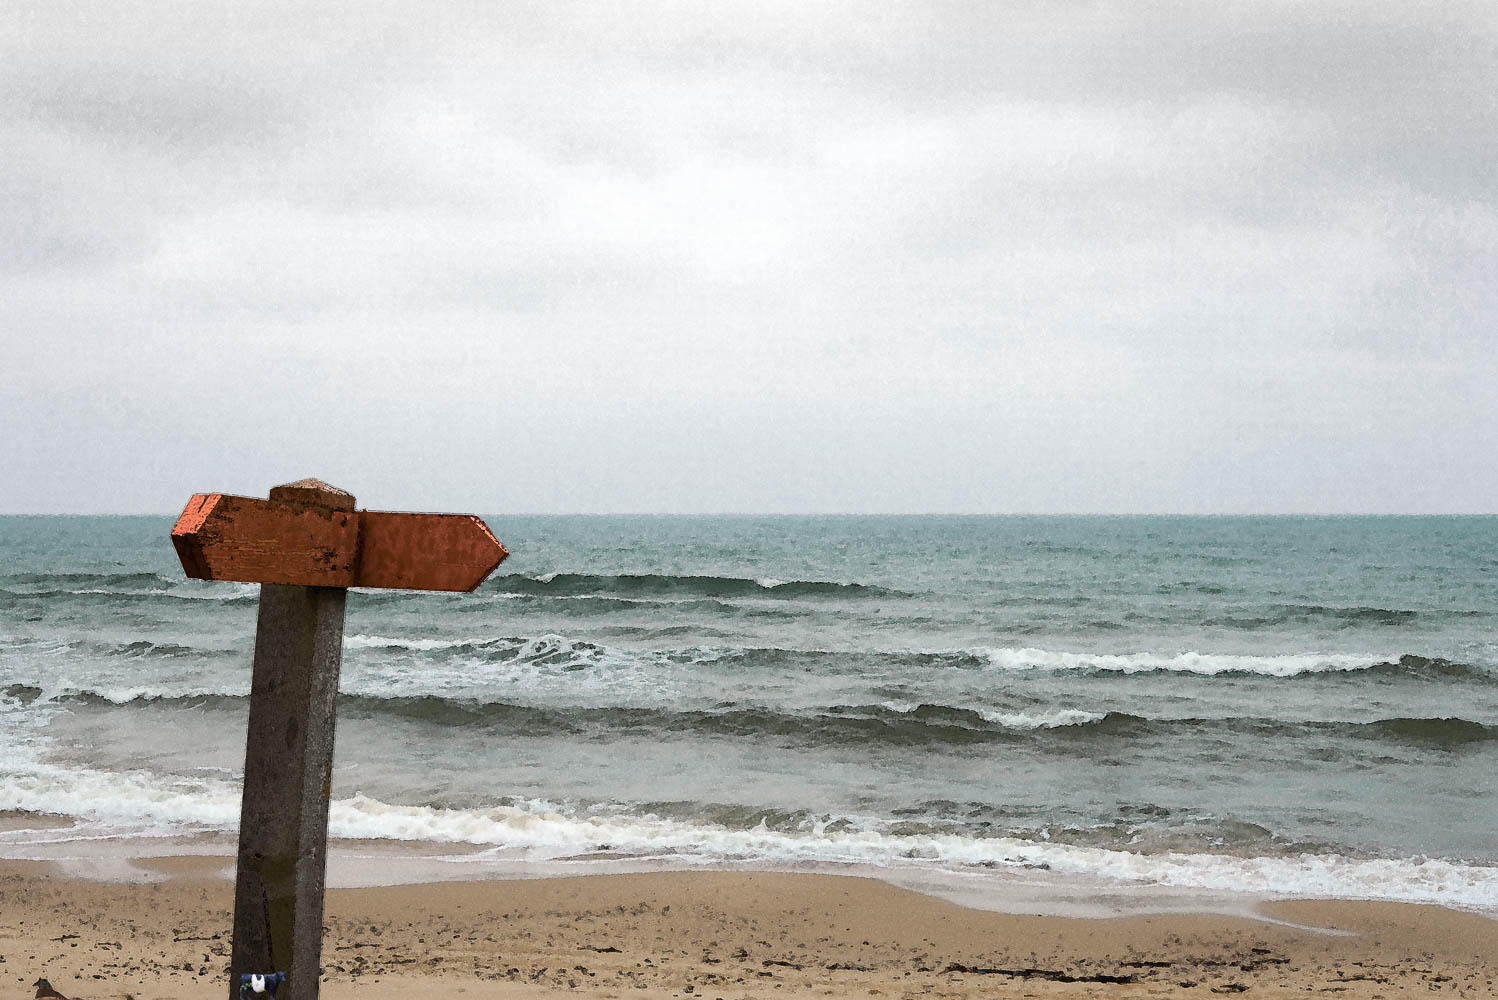 Bilden är ett fotografi av en vägskylt, där texten försvunnit. Skylten står i strandkanten, med havet som bakgrund.